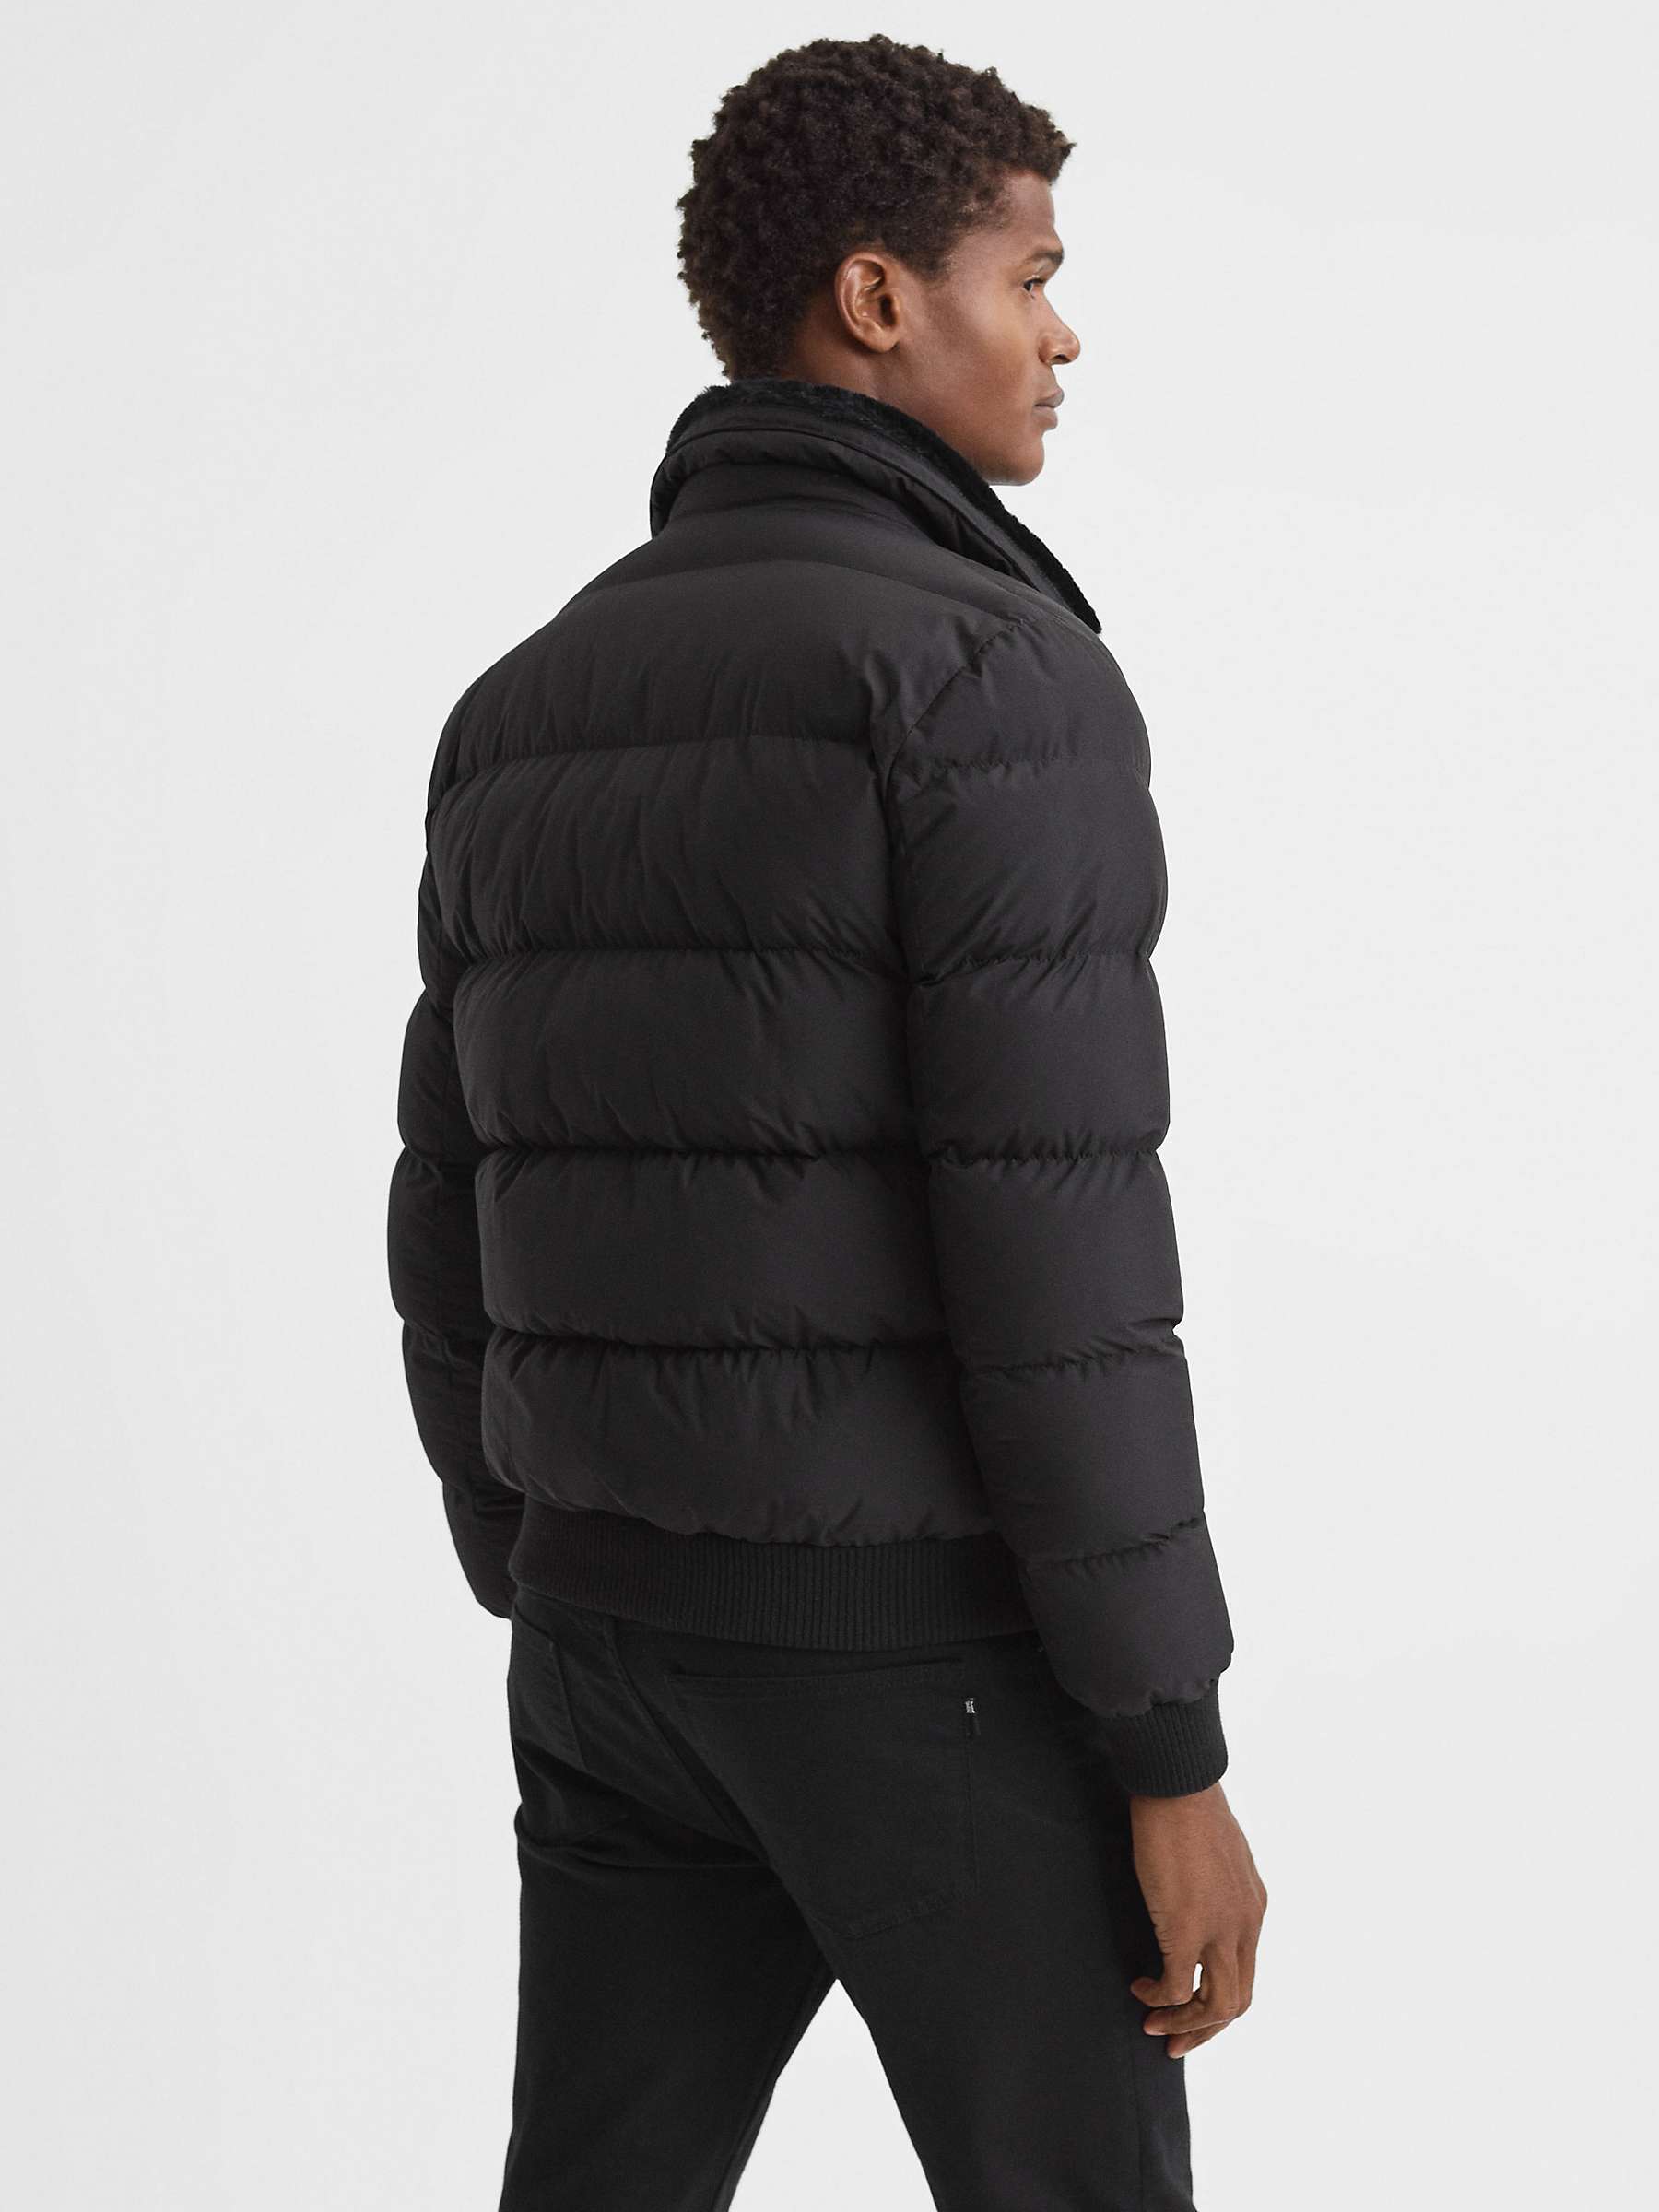 Reiss Mist Long Sleeve Zip Jacket, Black at John Lewis & Partners